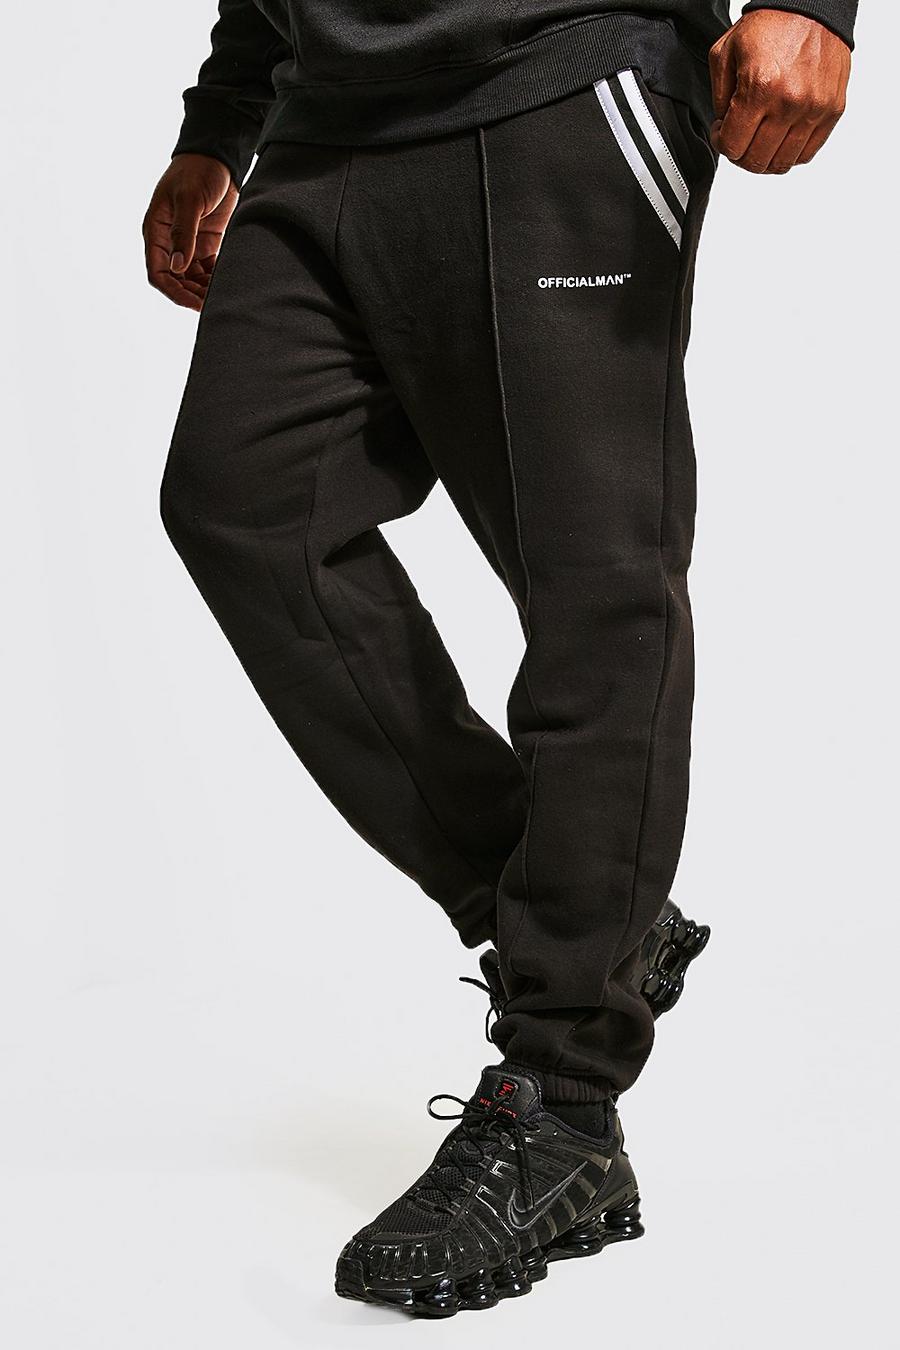 Pantalón deportivo Plus ajustado con bolsillos, franja lateral y alforza, Black nero image number 1